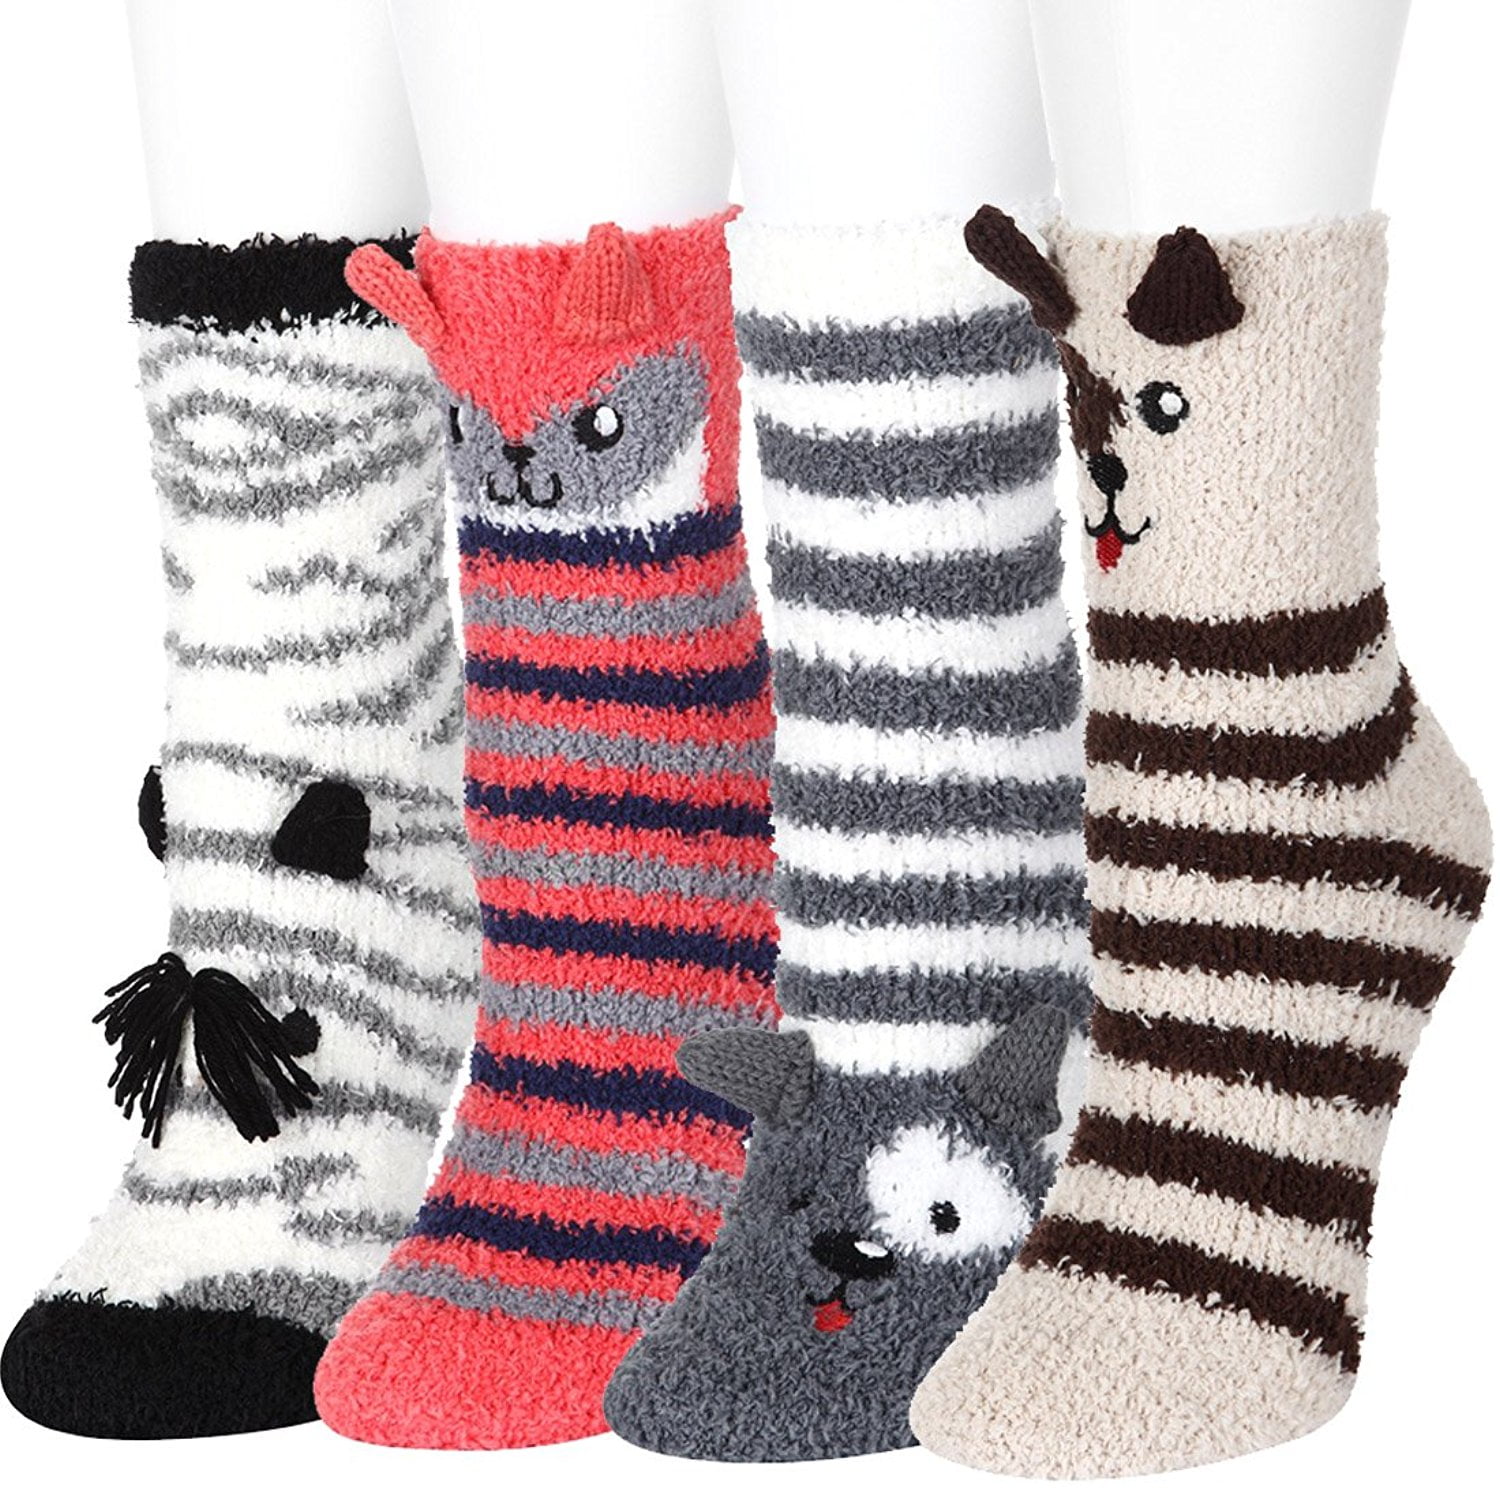 4 Pairs Fuzzy Socks Women Girls Cartoon Animals Slipper Sleeping Winter ...